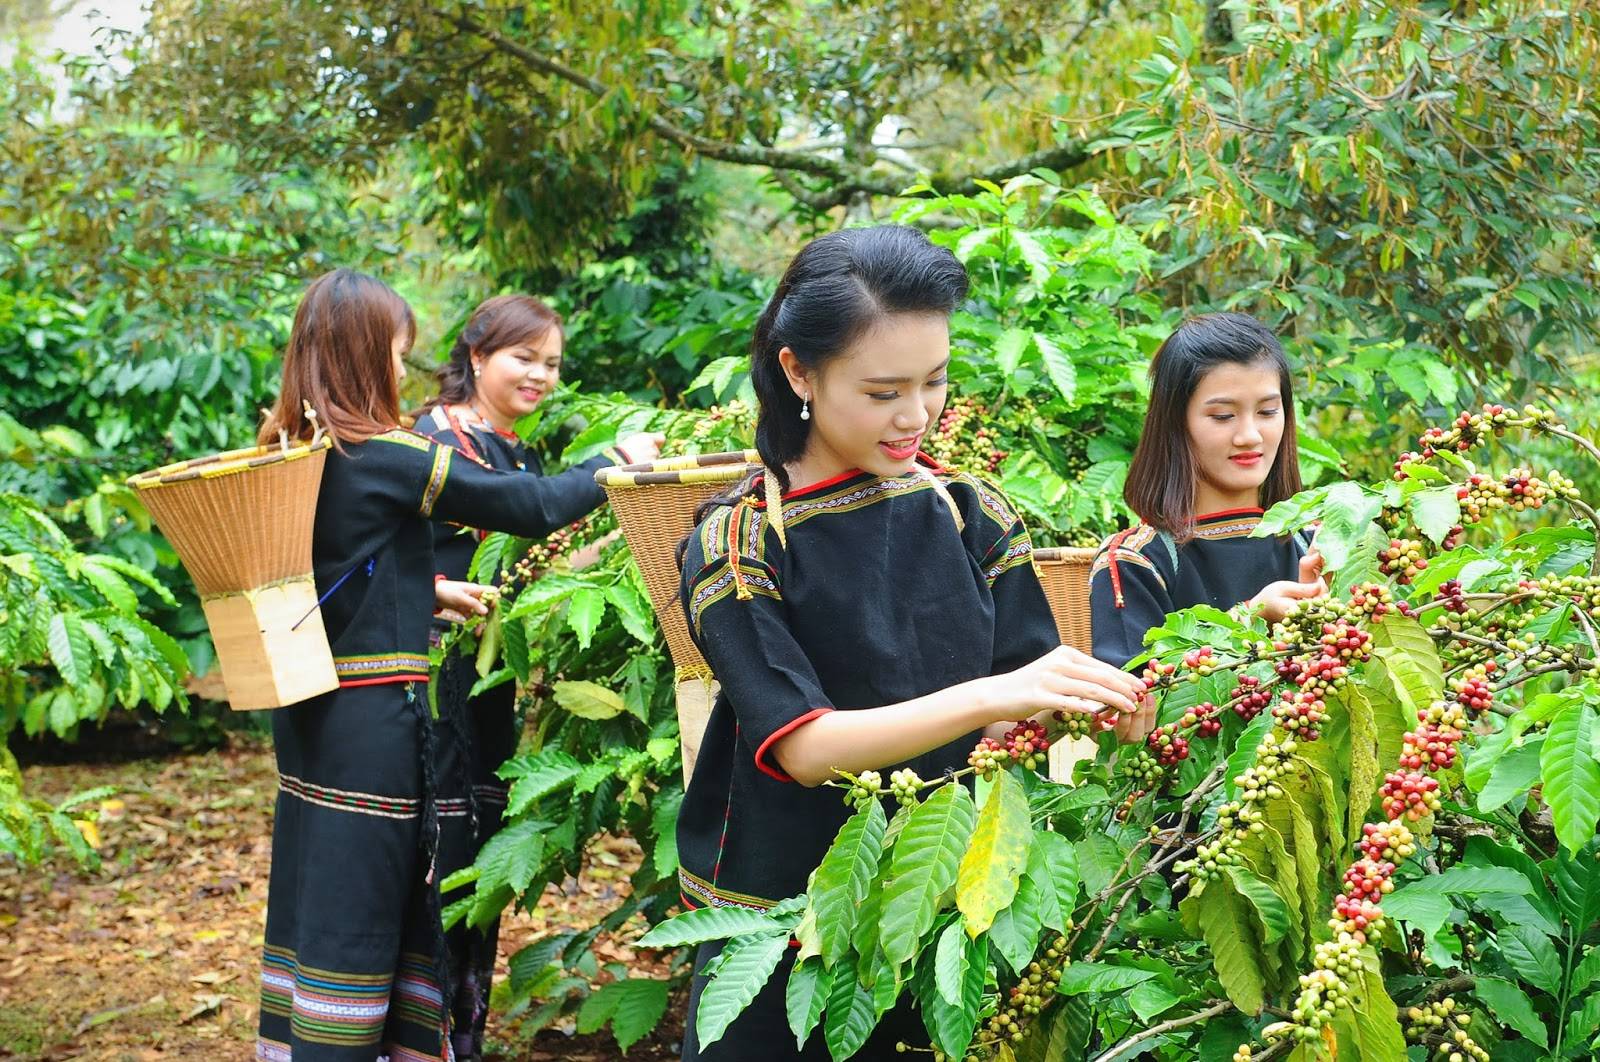 Как заваривают кофе во вьетнаме и что такое вьетнамская кофеварка